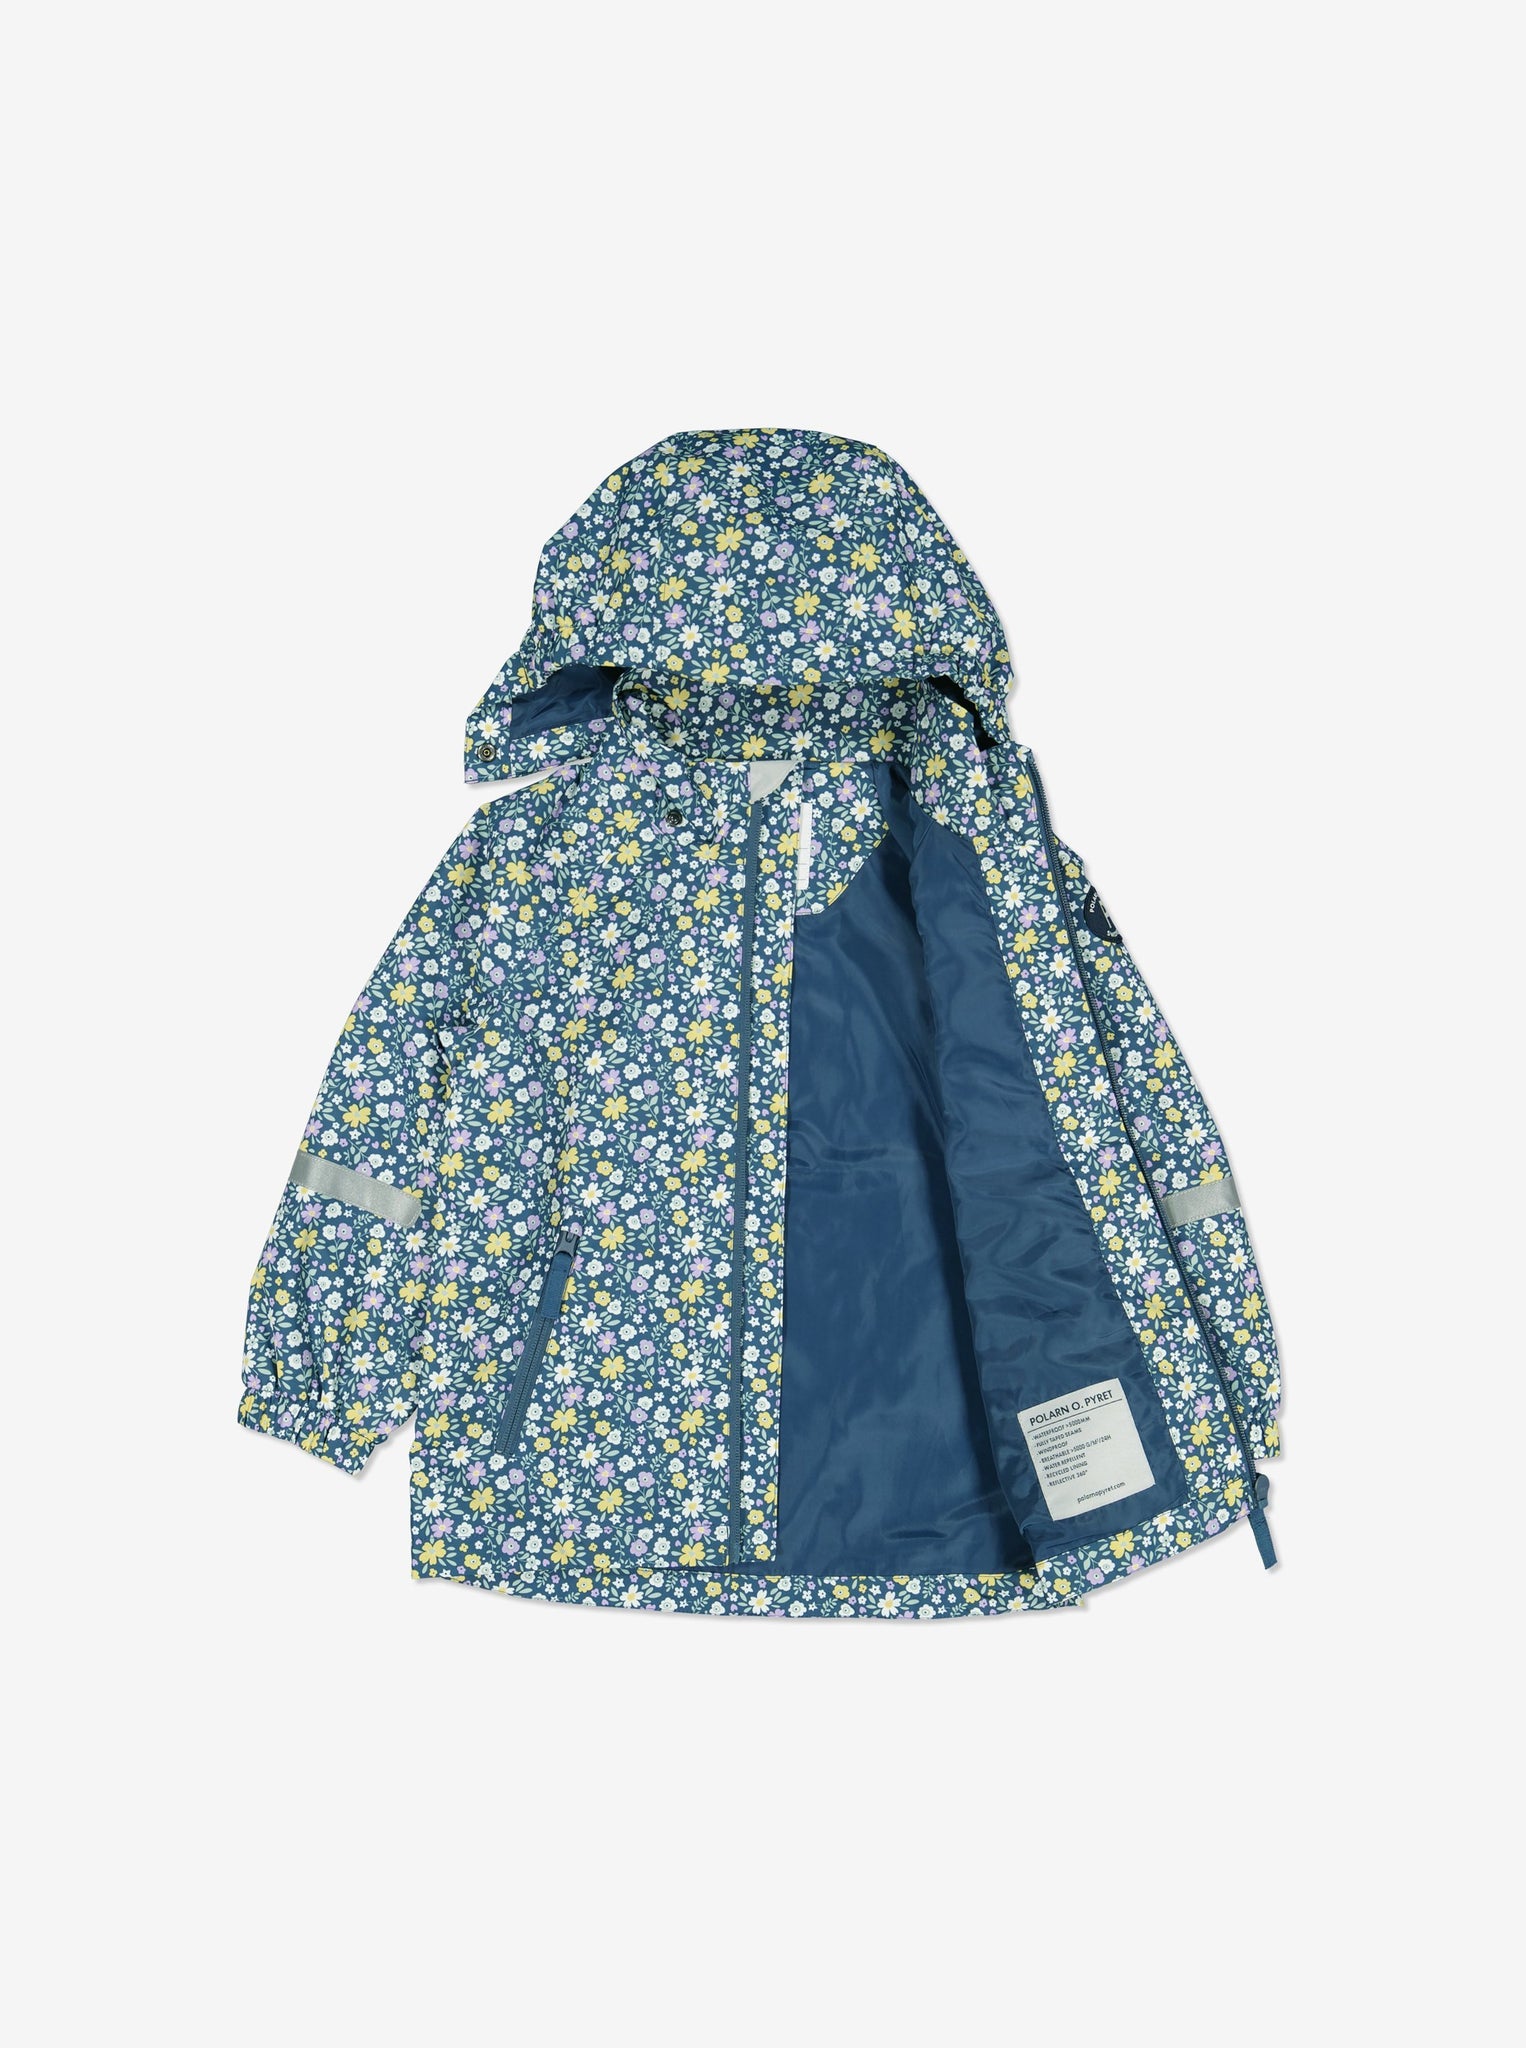 Floral Kids Waterproof Jacket from Polarn O. Pyret Kidswear. Waterproof Kids Jacket